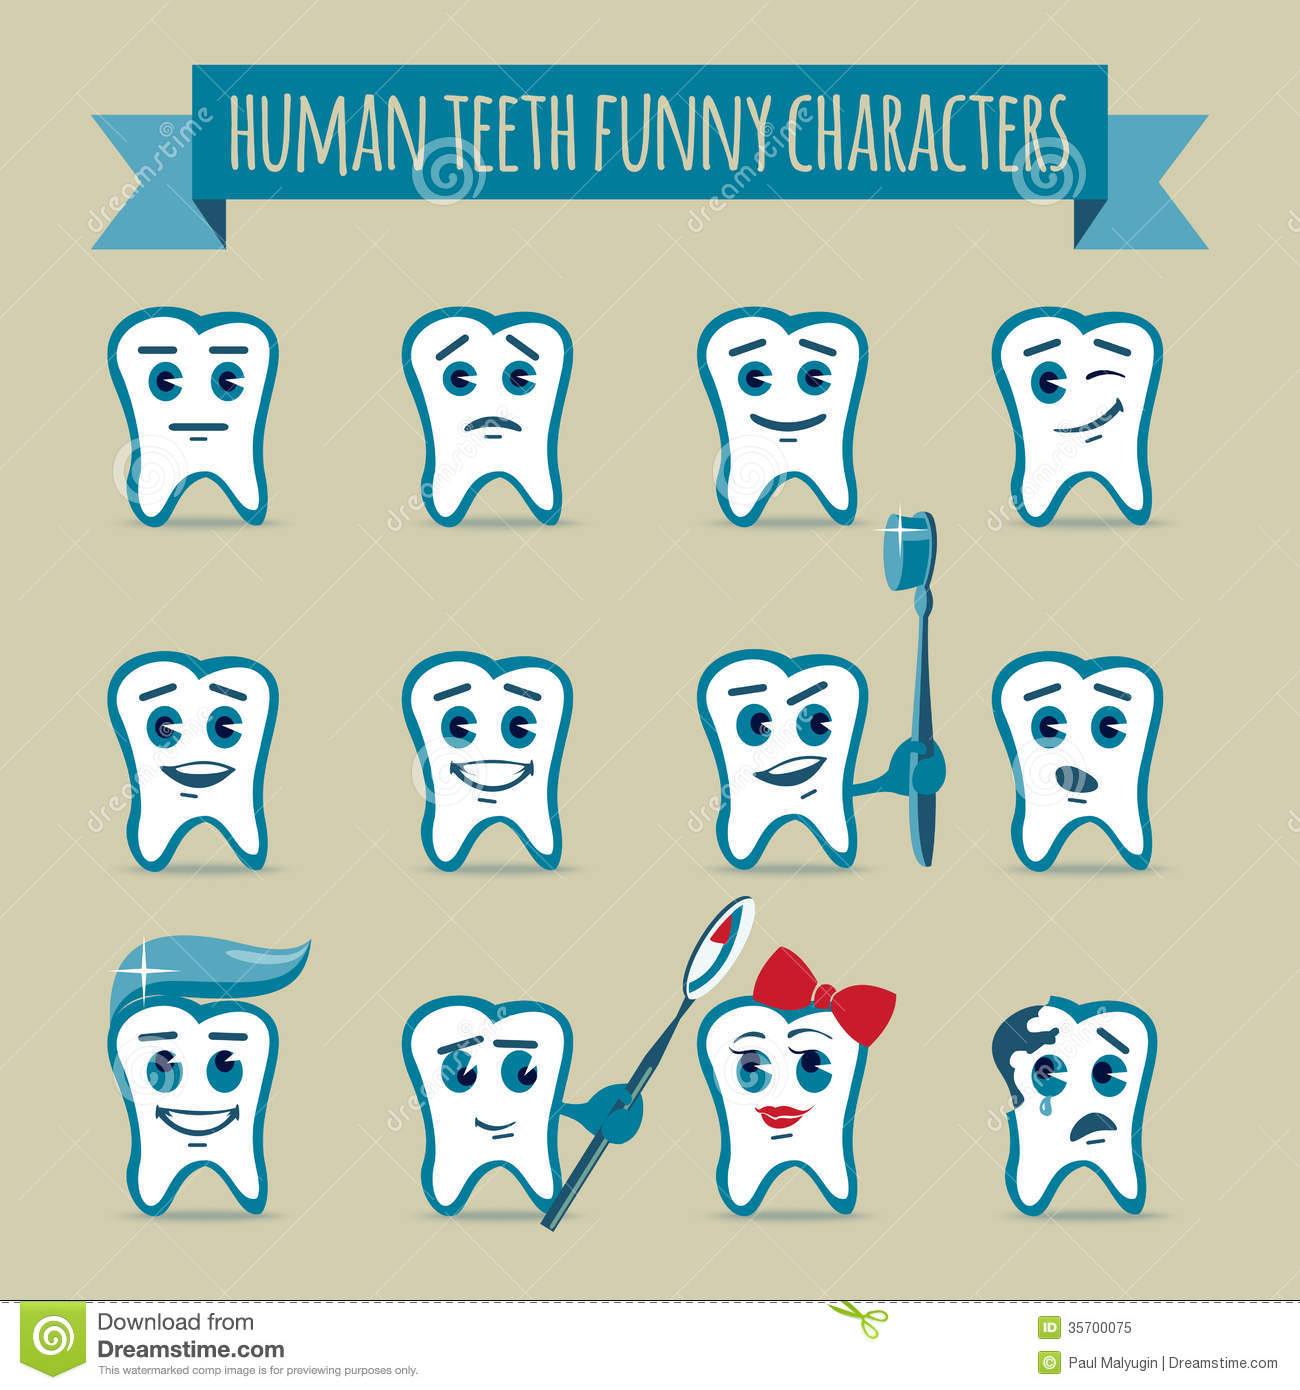 Human Teeth Funny Characters